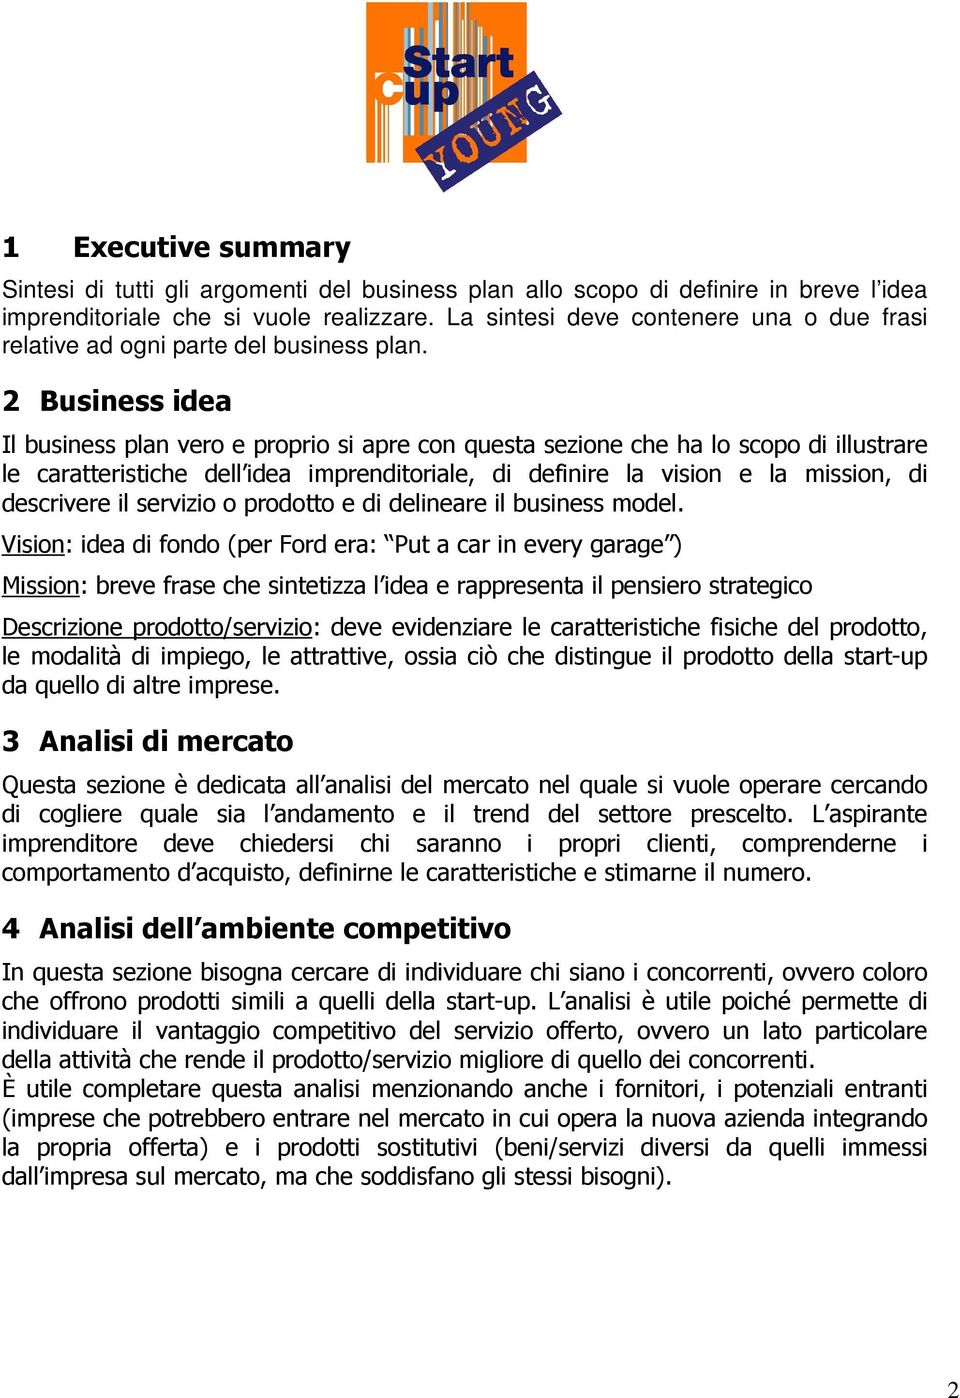 2 Business idea Il business plan vero e proprio si apre con questa sezione che ha lo scopo di illustrare le caratteristiche dell idea imprenditoriale, di definire la vision e la mission, di